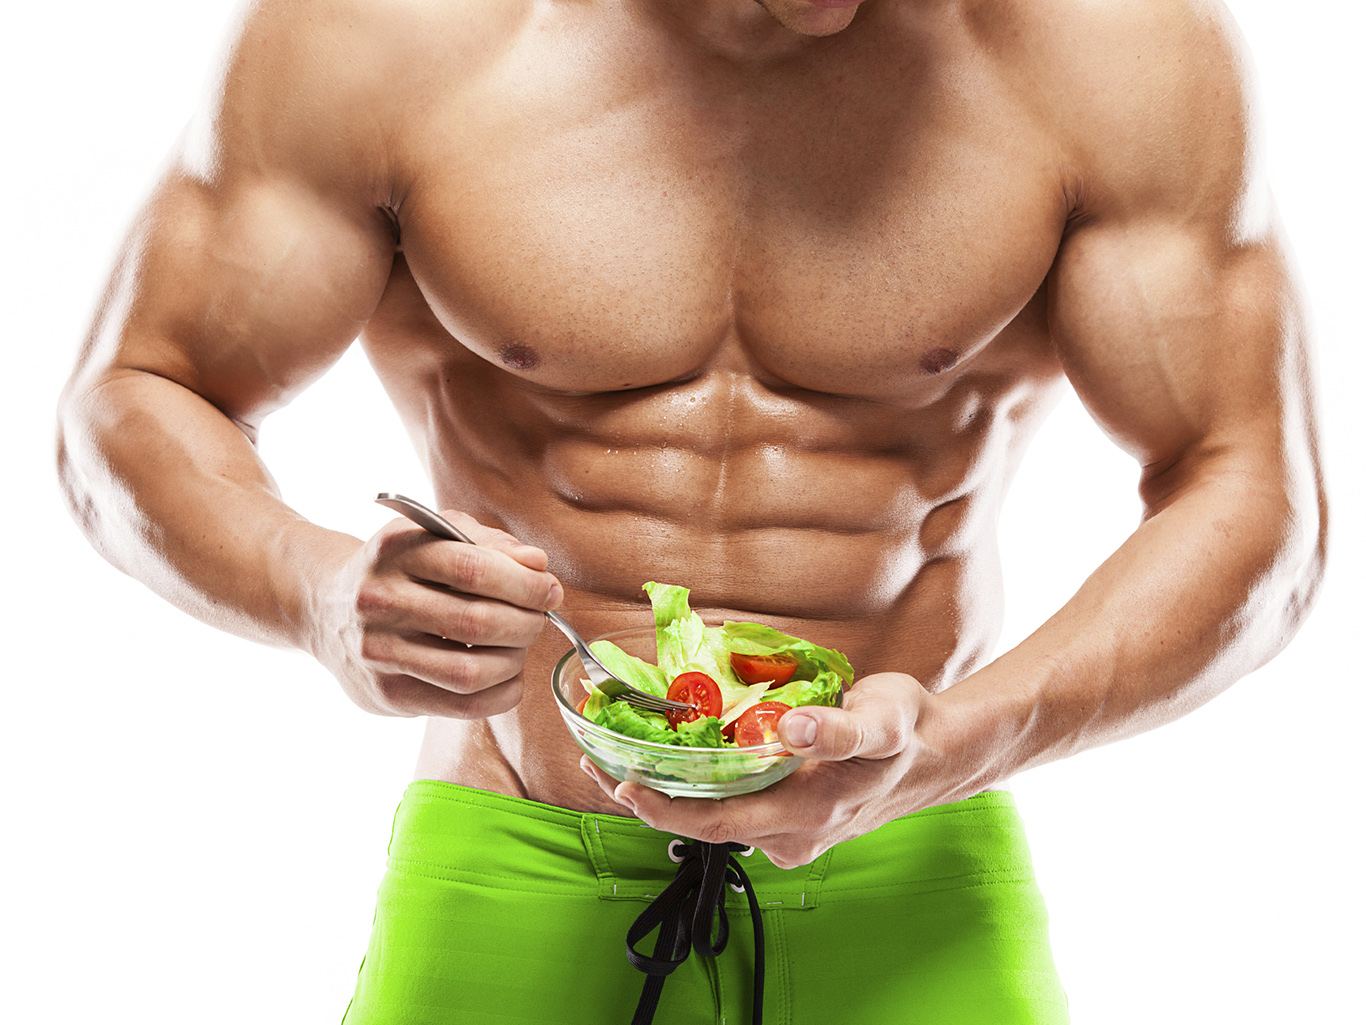 Правильное питание – одна из главных задач при наборе веса. Мужчины должны питаться каждые 2-3 часа | Блог Fitness Factor